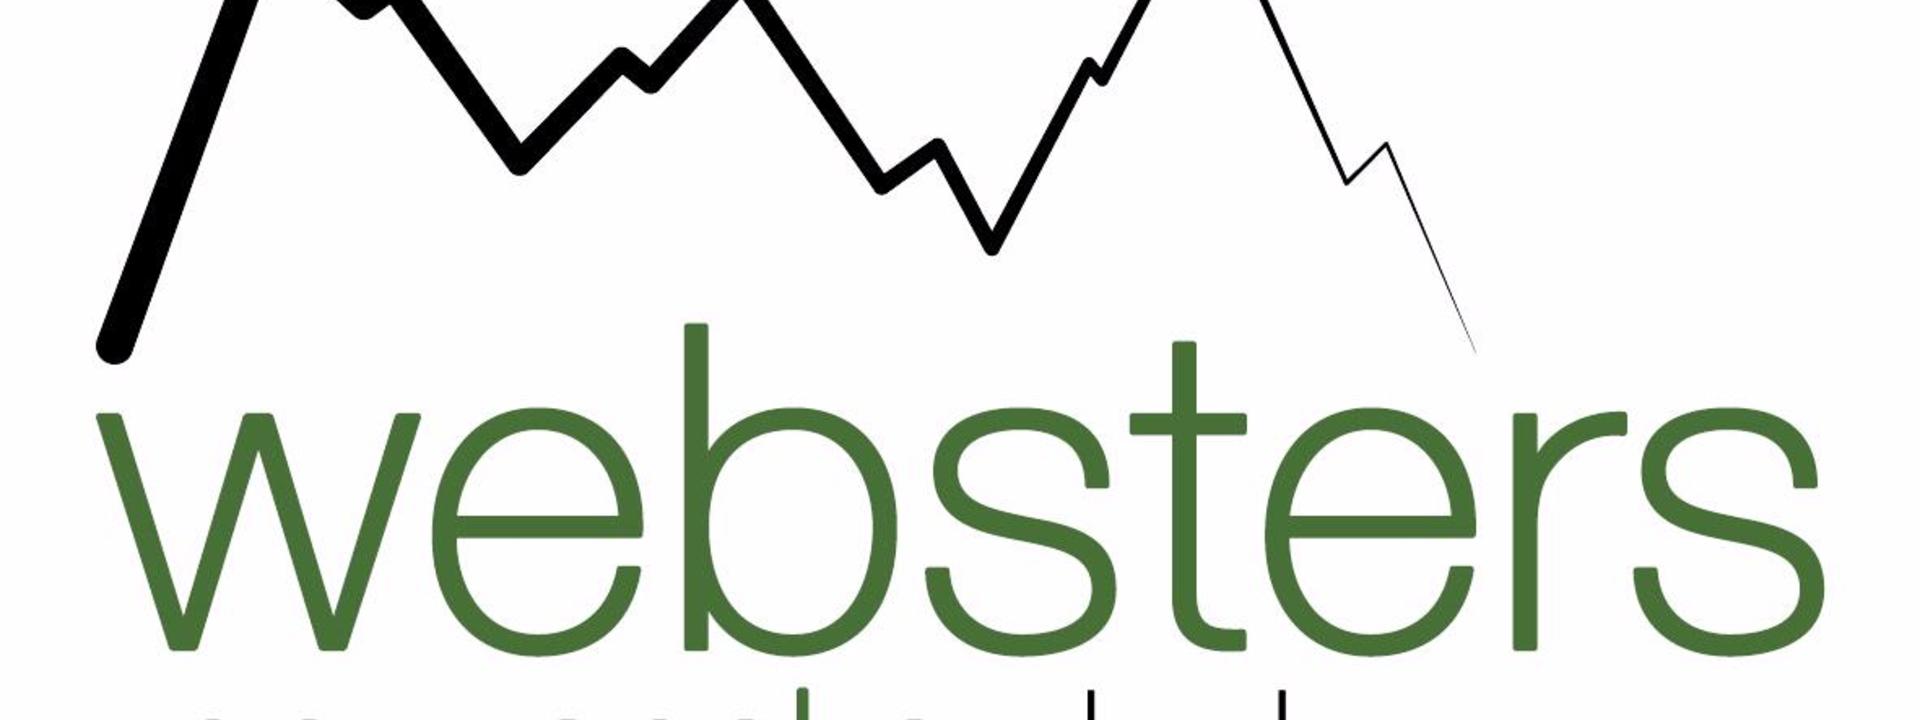 Websters on Wanaka Lodge_Logo